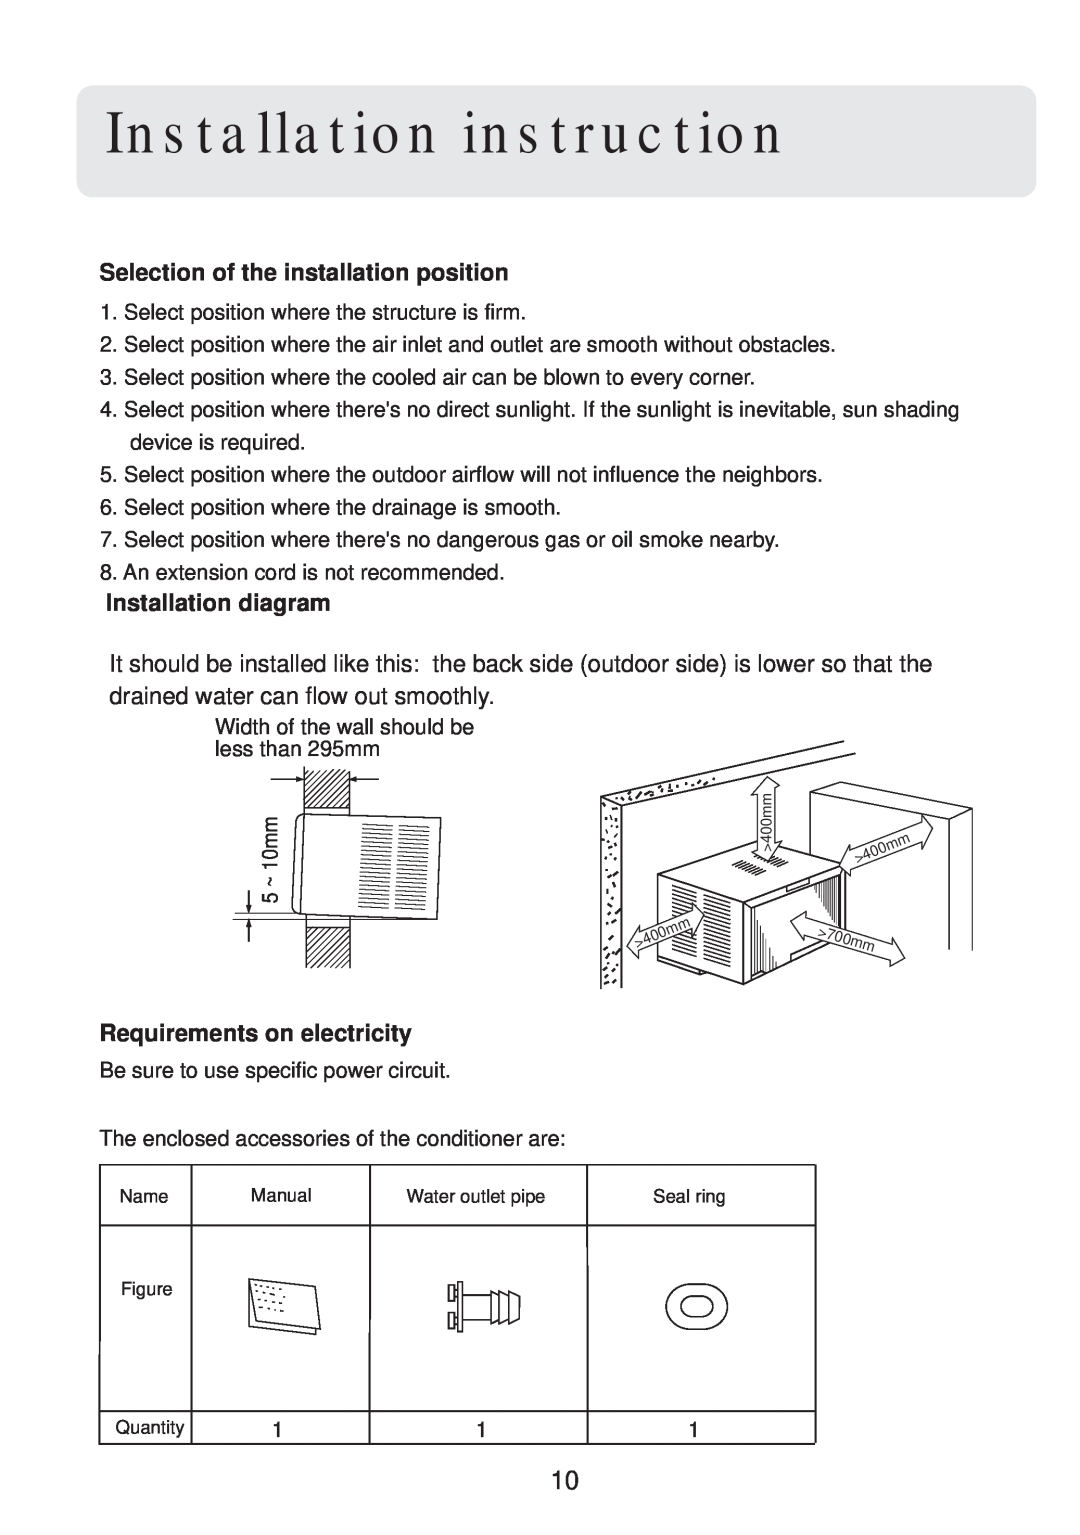 Haier HW-09CV03, HW-12CV03 manual Installation instruction, Selection of the installation position, Installation diagram 